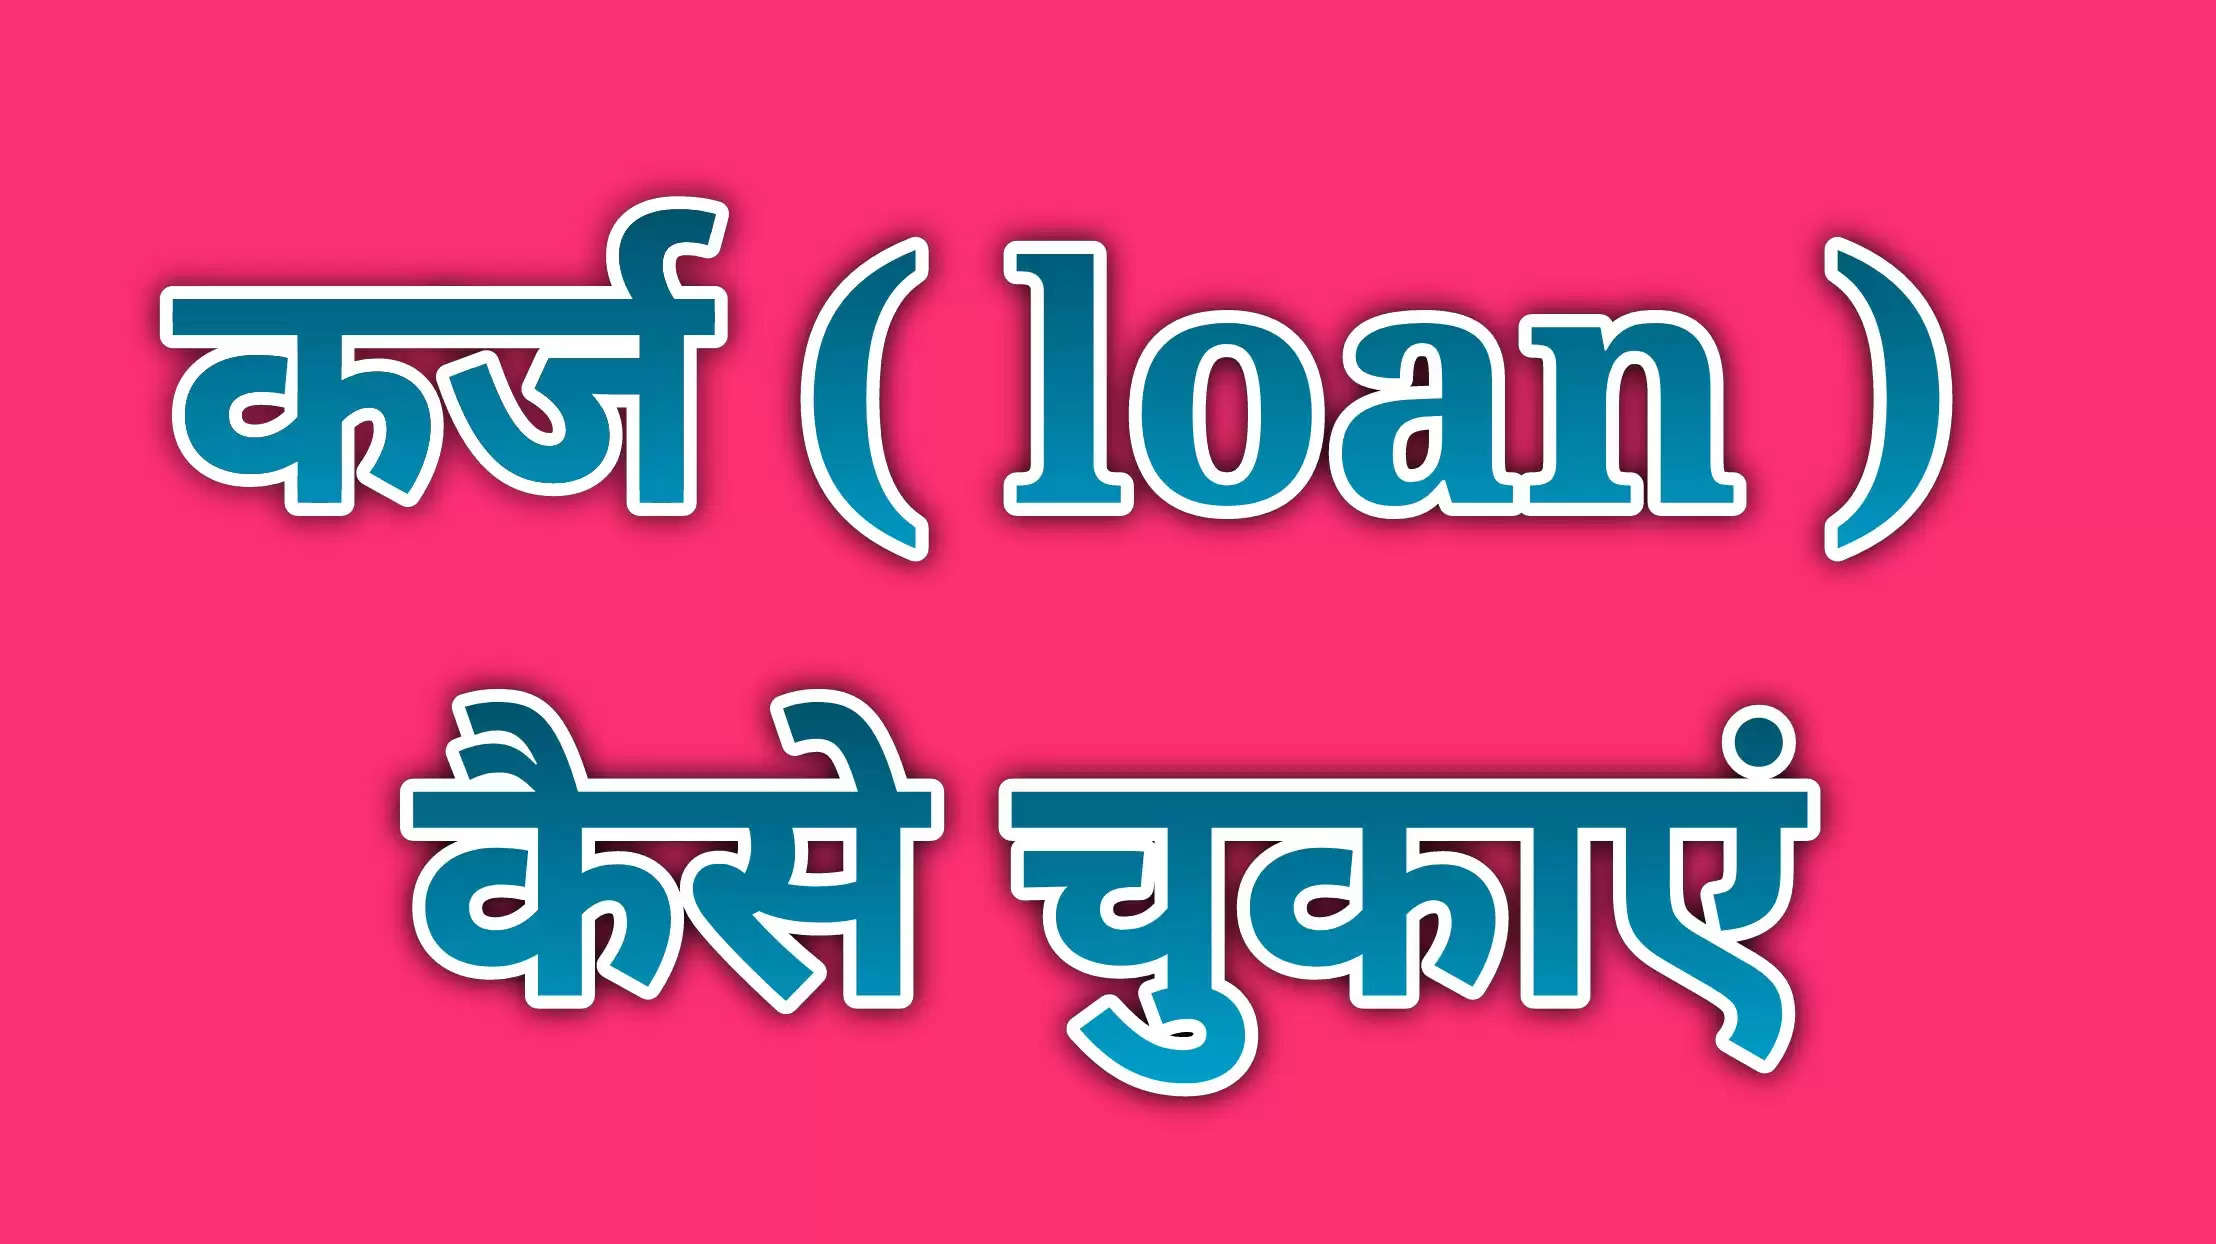 loan logo